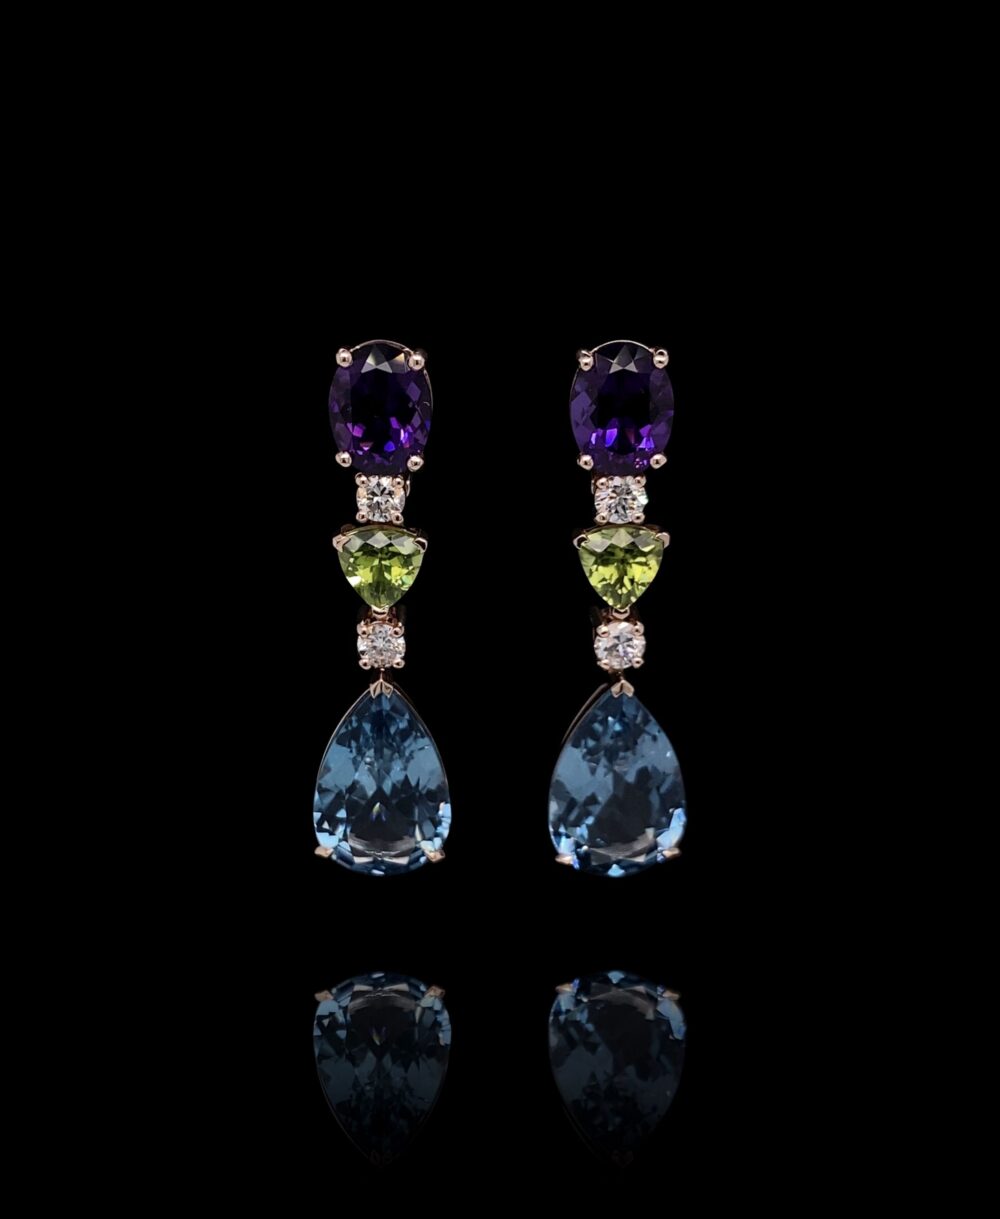 Oval Shape Amethyst, Trilliant Cut Peridot, Pear Shape London Blue Topaz Brilliant Cut Diamonds Earrings